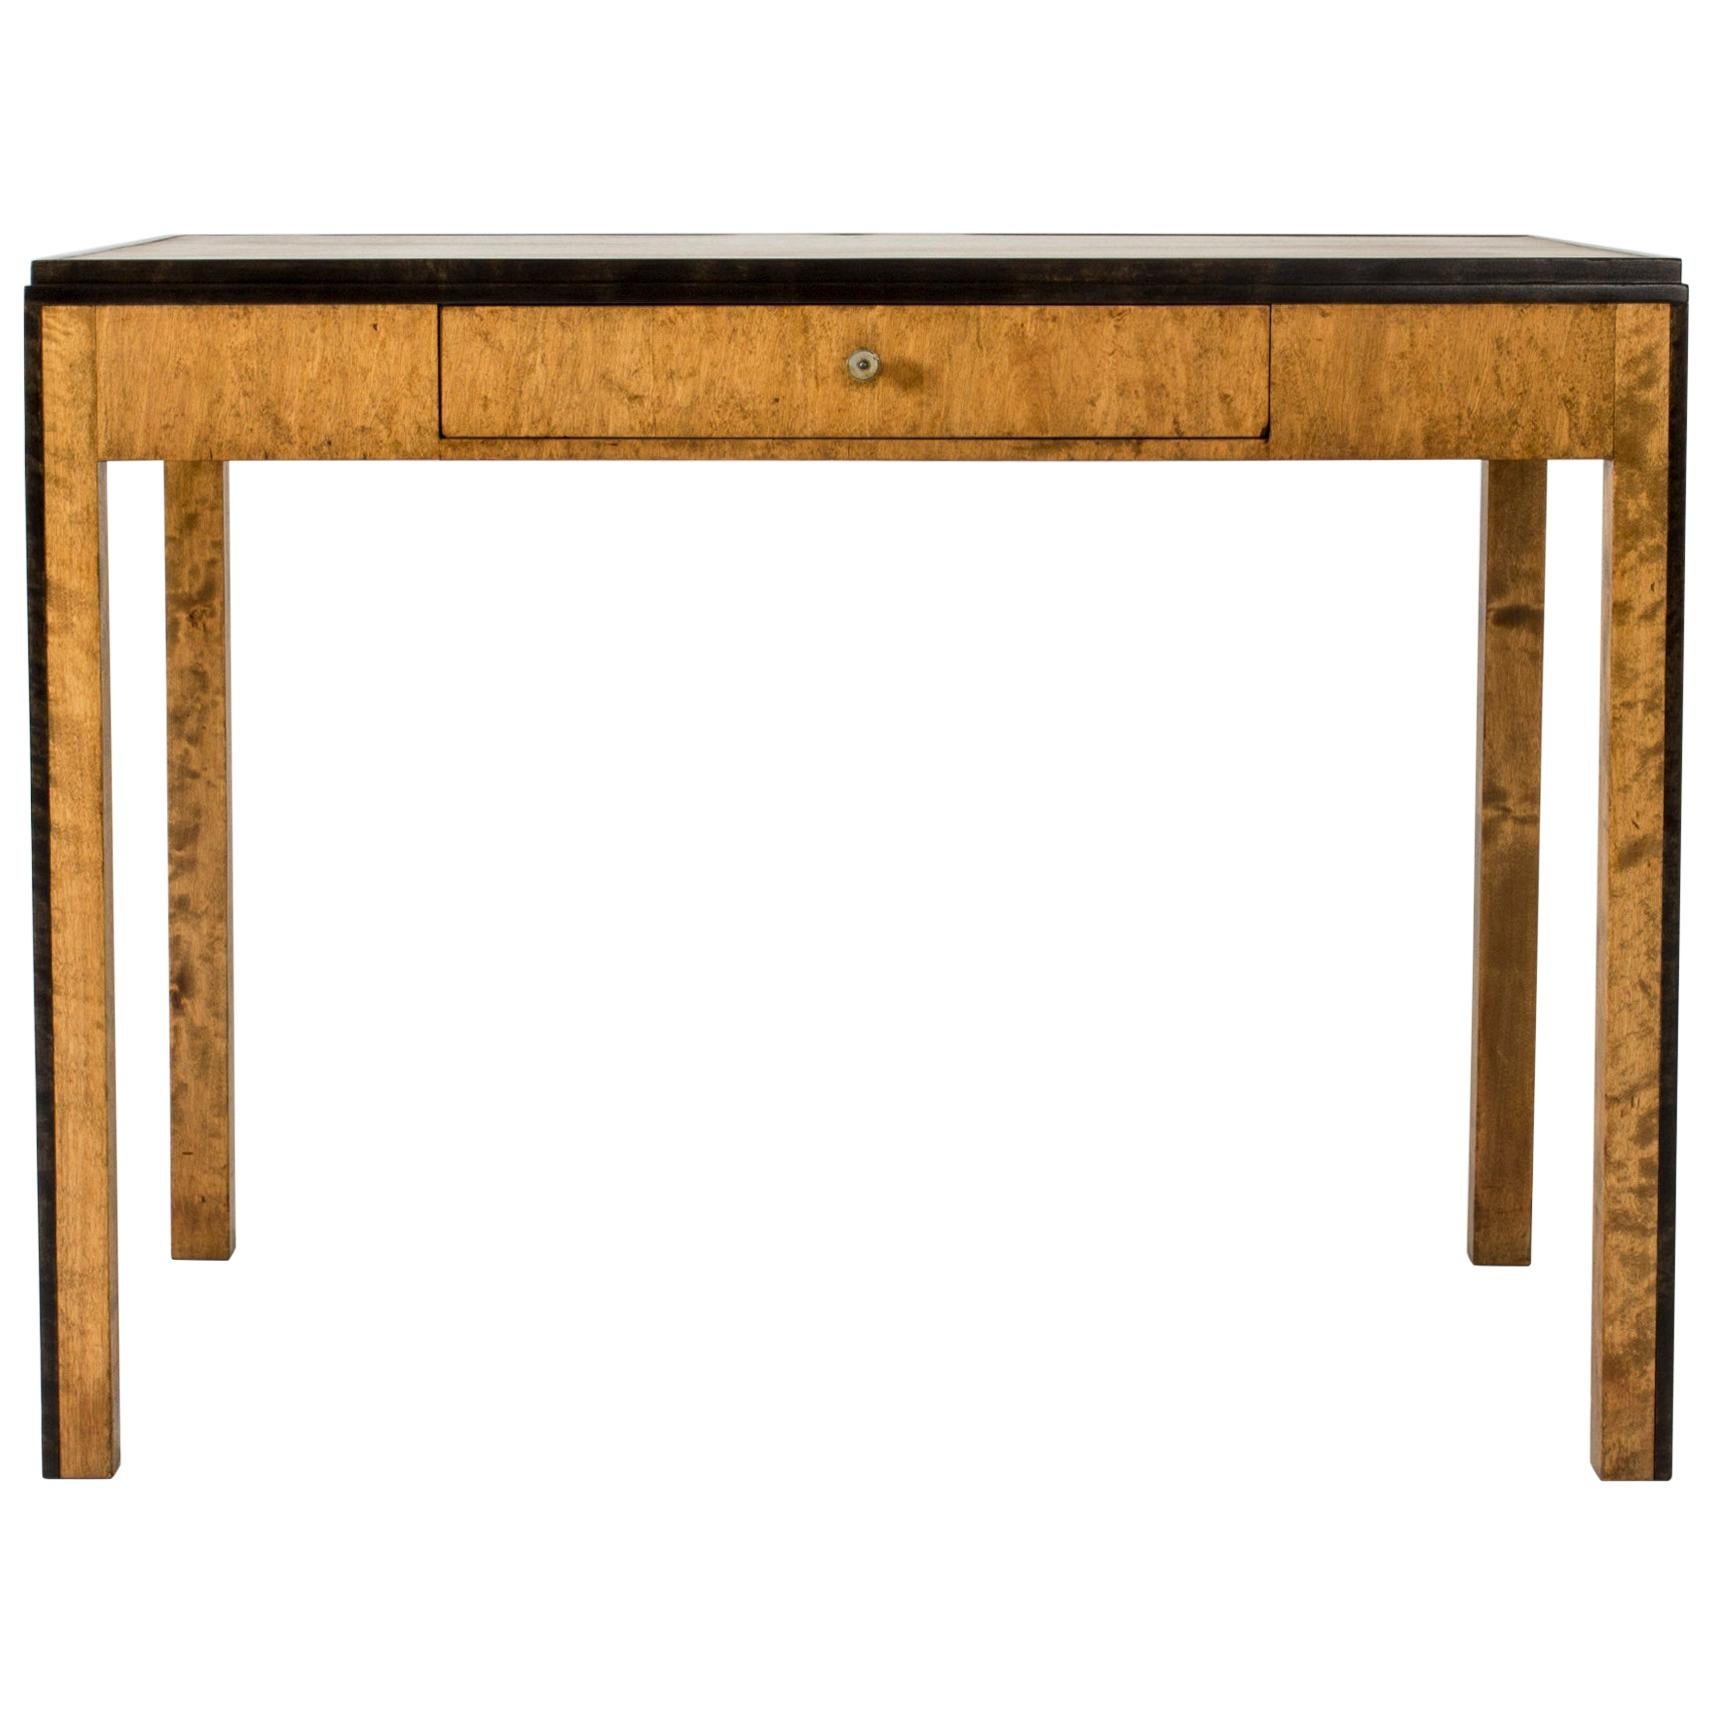 Birch Desk "Sara" Designed by Axel-Einar Hjorth for Nordiska Kompaniet, 1930